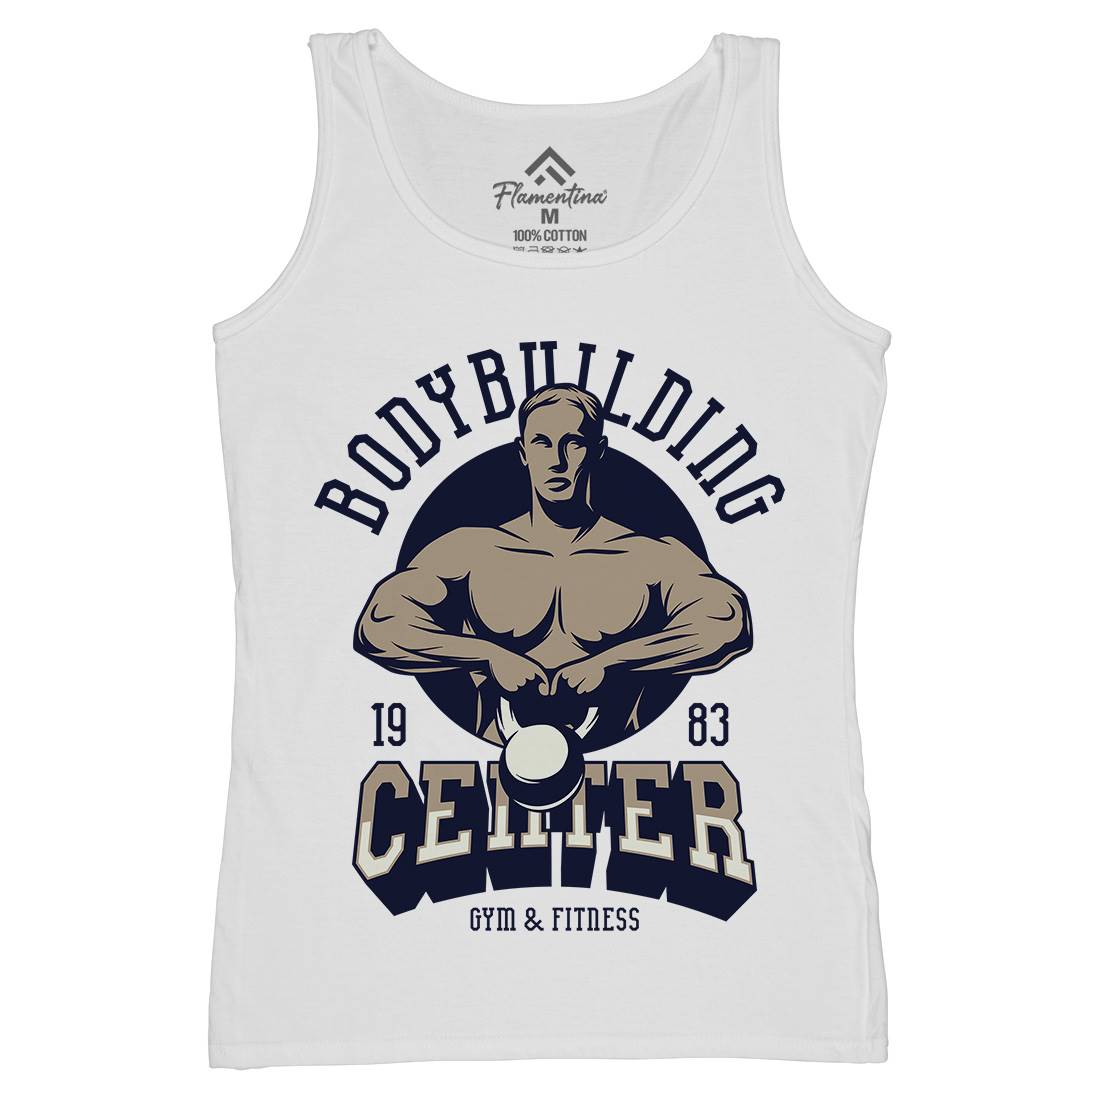 Bodybuilding Centre Womens Organic Tank Top Vest Gym D911